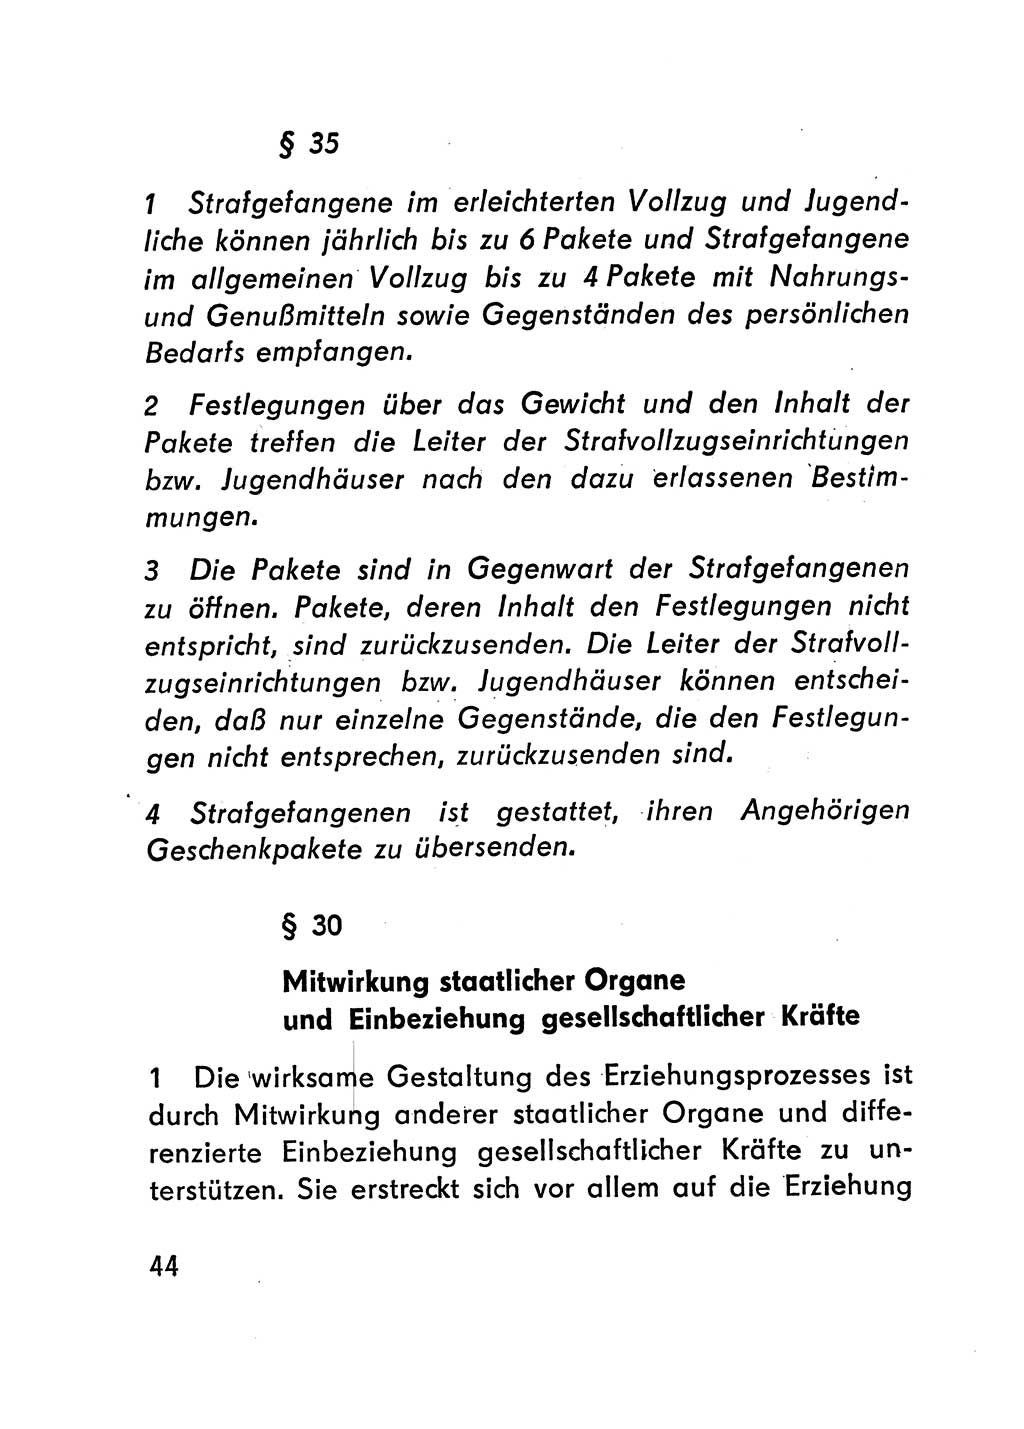 Gesetz über den Vollzug der Strafen mit Freiheitsentzug (Strafvollzugsgesetz) - StVG - [Deutsche Demokratische Republik (DDR)] 1977, Seite 44 (StVG DDR 1977, S. 44)